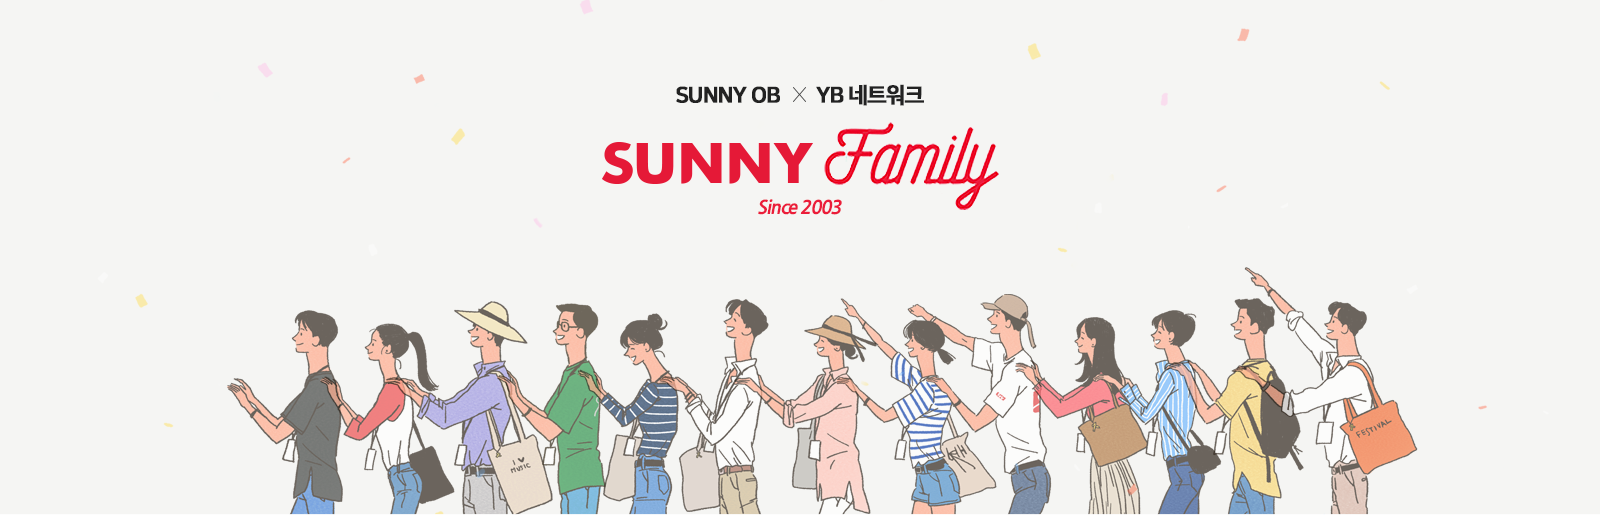 SUNNY OB X YB 네트워크 SUNNY FAMILY Since 2003